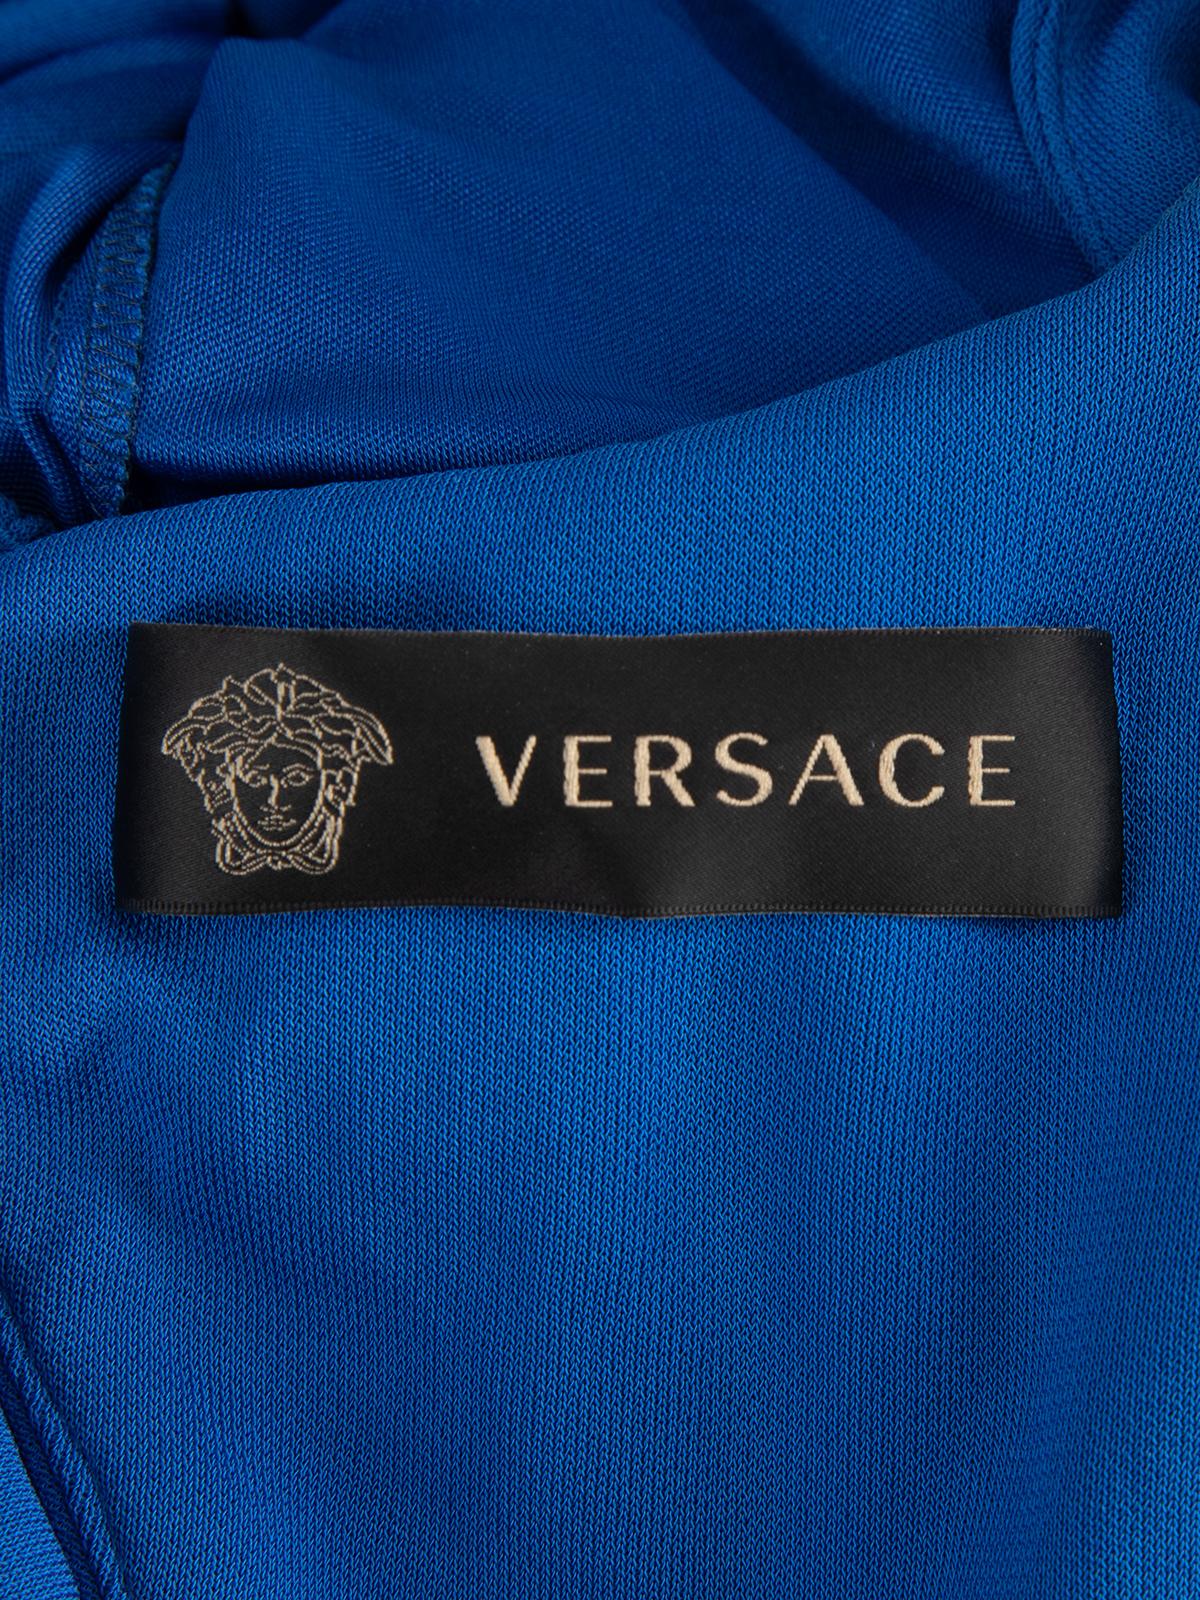 Pre-Loved Versace Women's Sleeveless Knee Length Dress For Sale 3